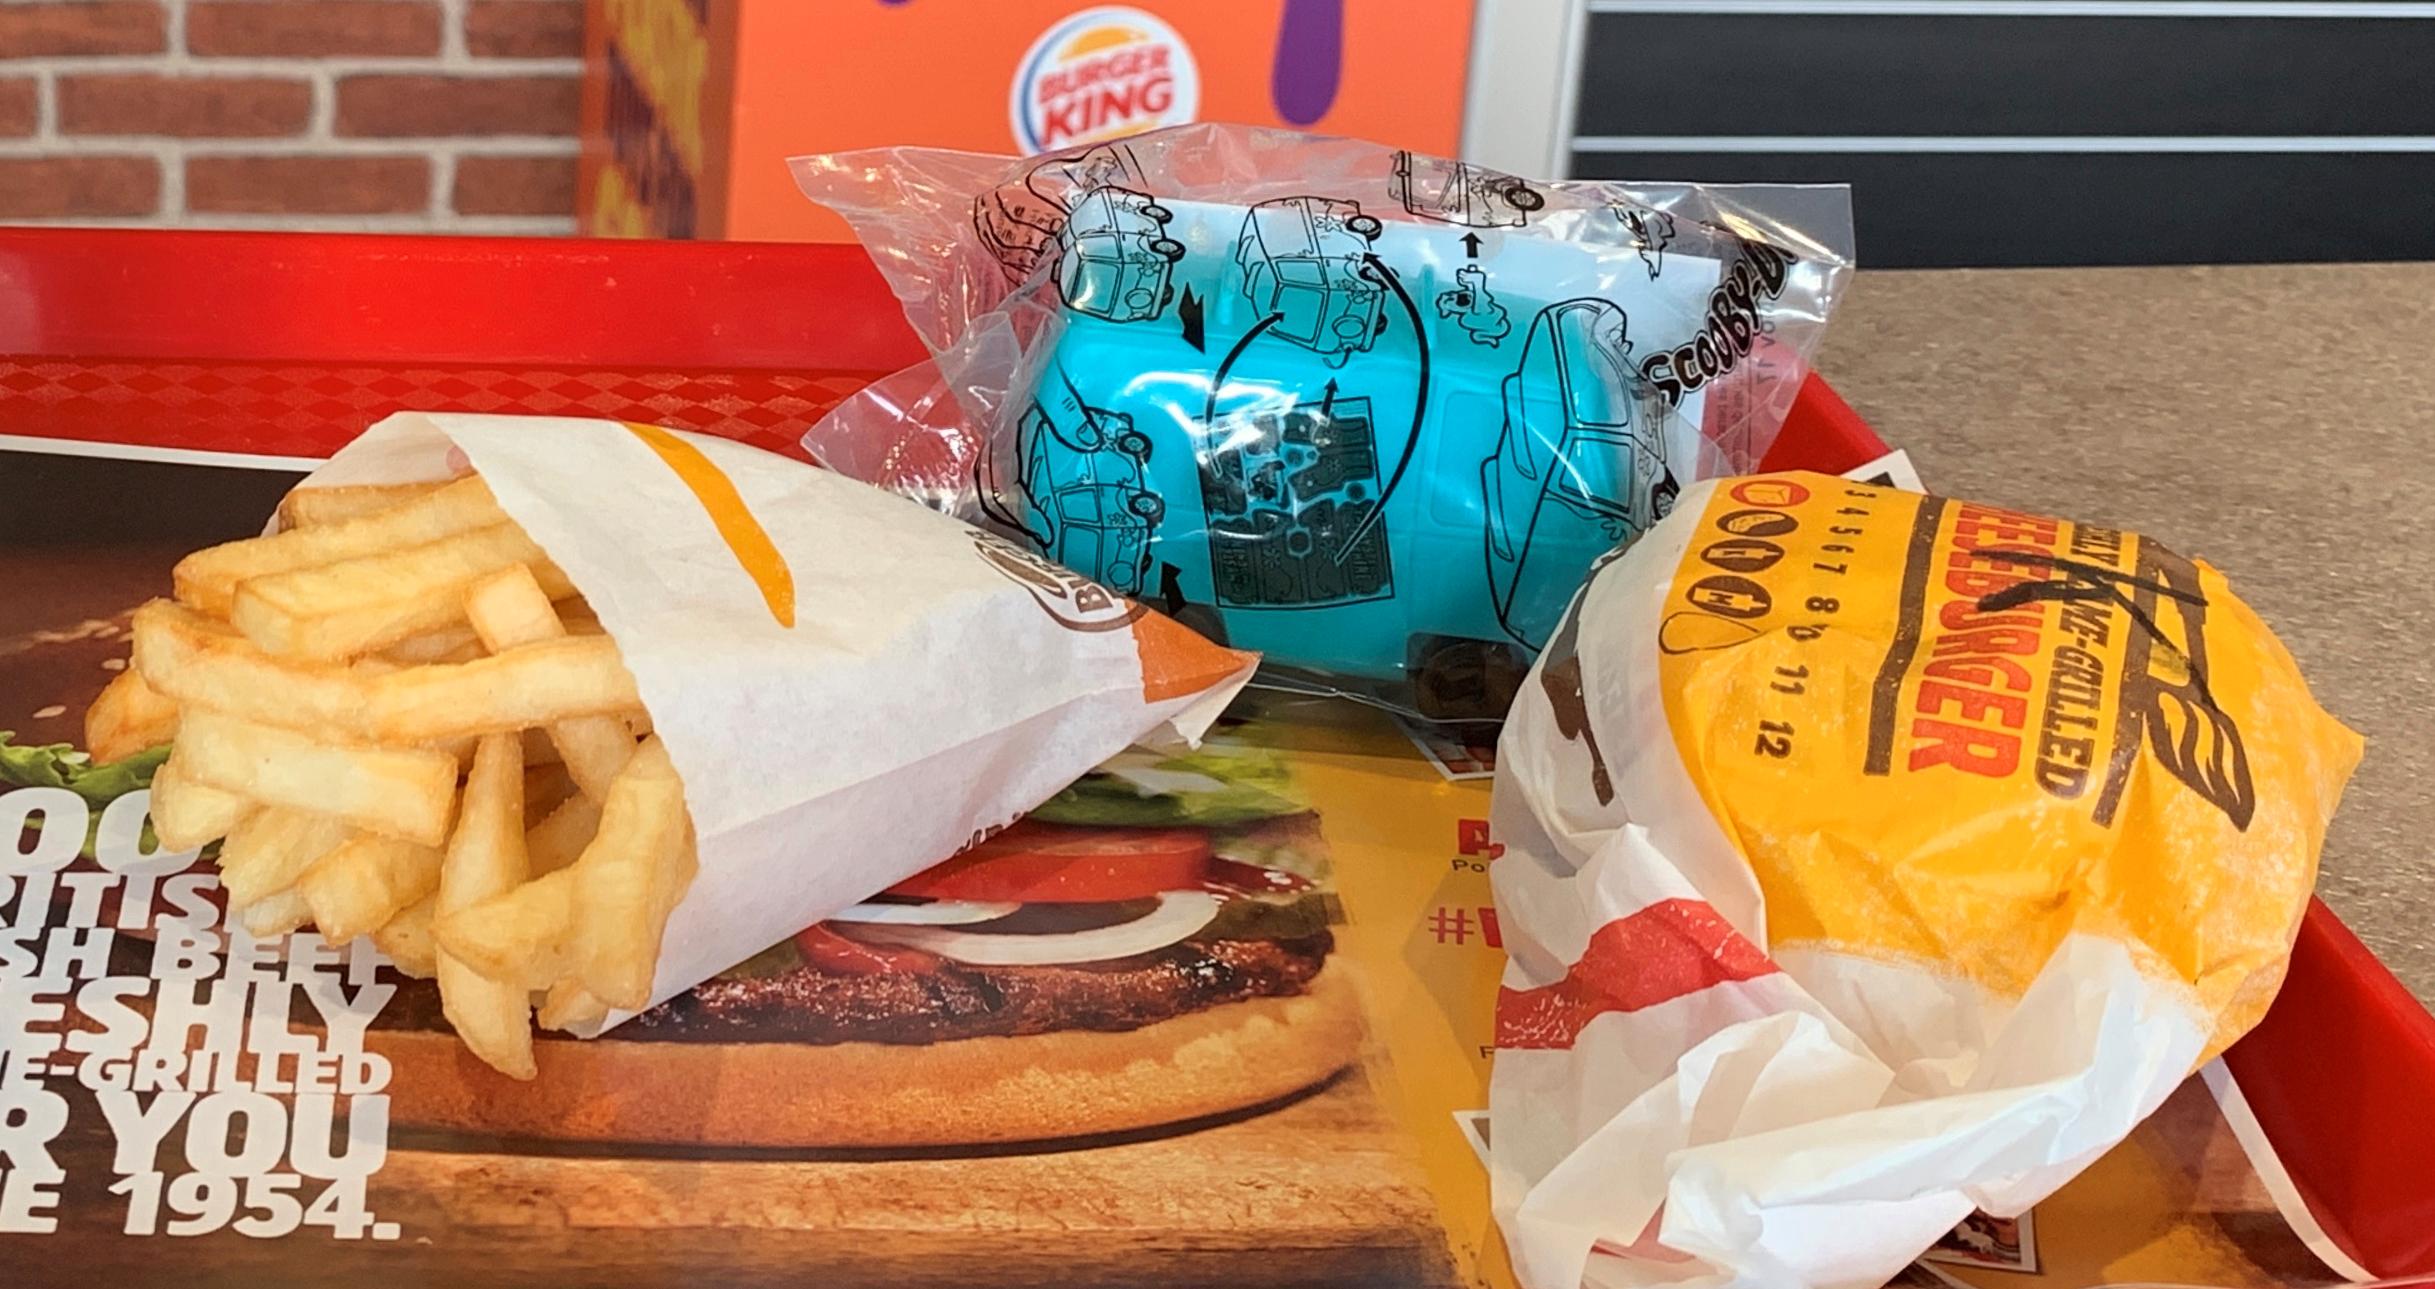 SLUTT: Burger King gjør permanente endringer i barnemenyen.